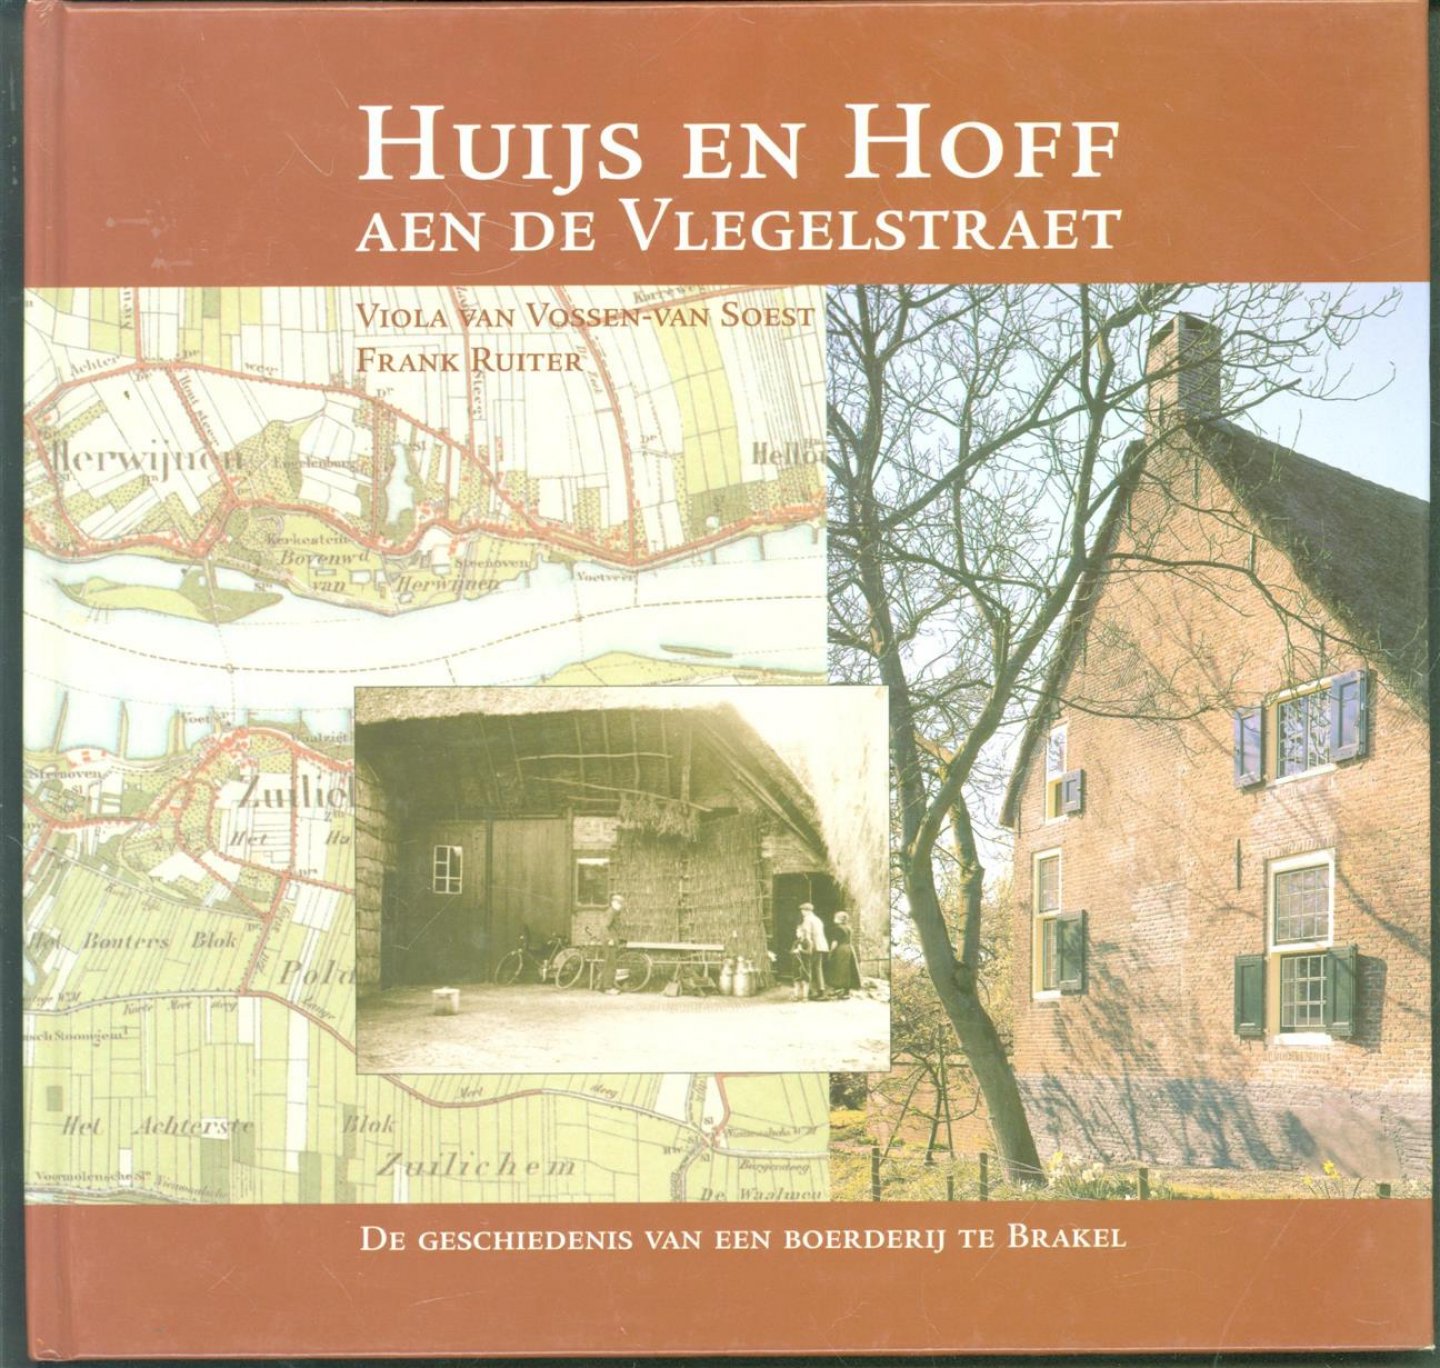 Vossen-van Soest, Viola van, Ruiter, Frank - Huijs en Hoff aen de Vlegelstraet